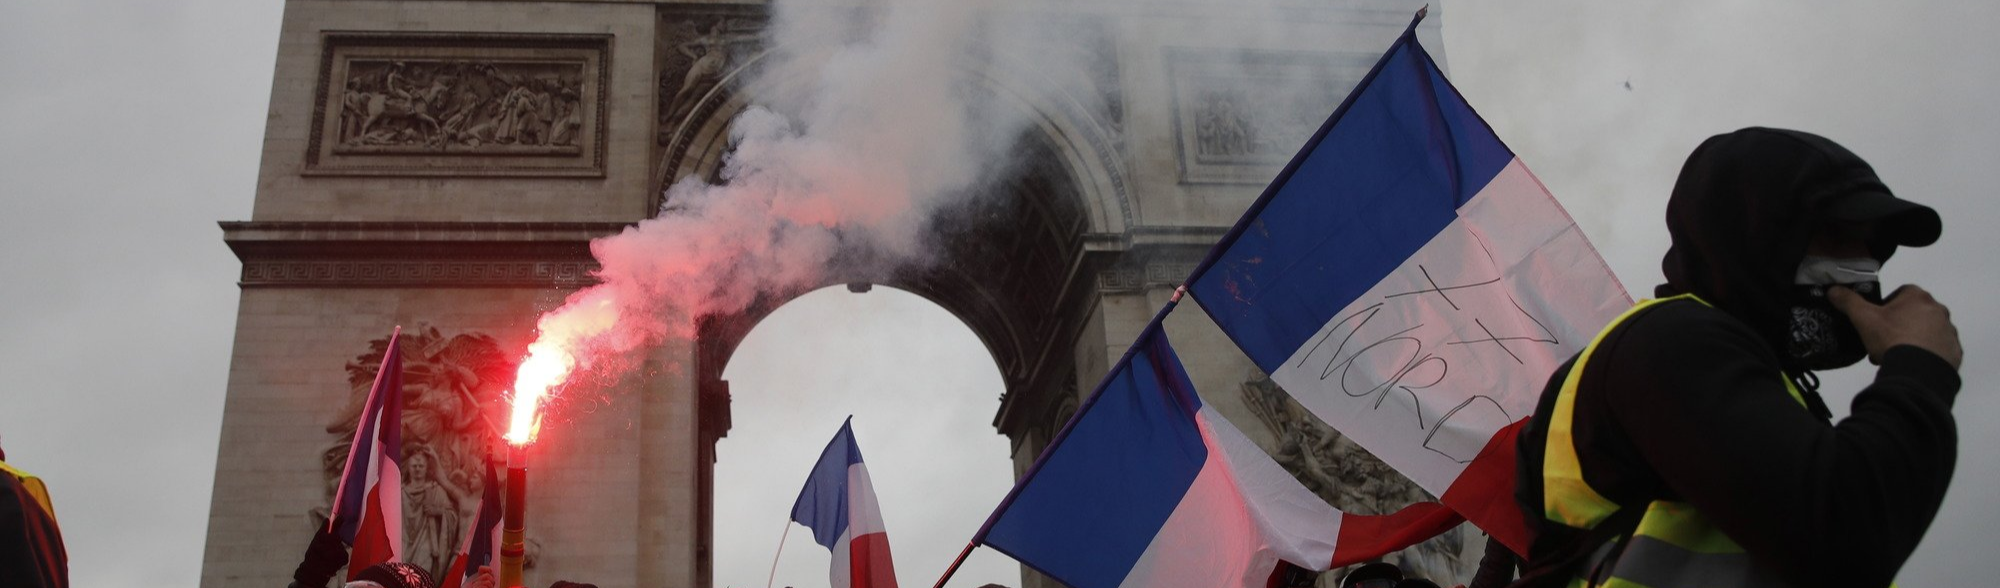 Paris em chamas: fim de semana é marcado por protestos dos coletes amarelos